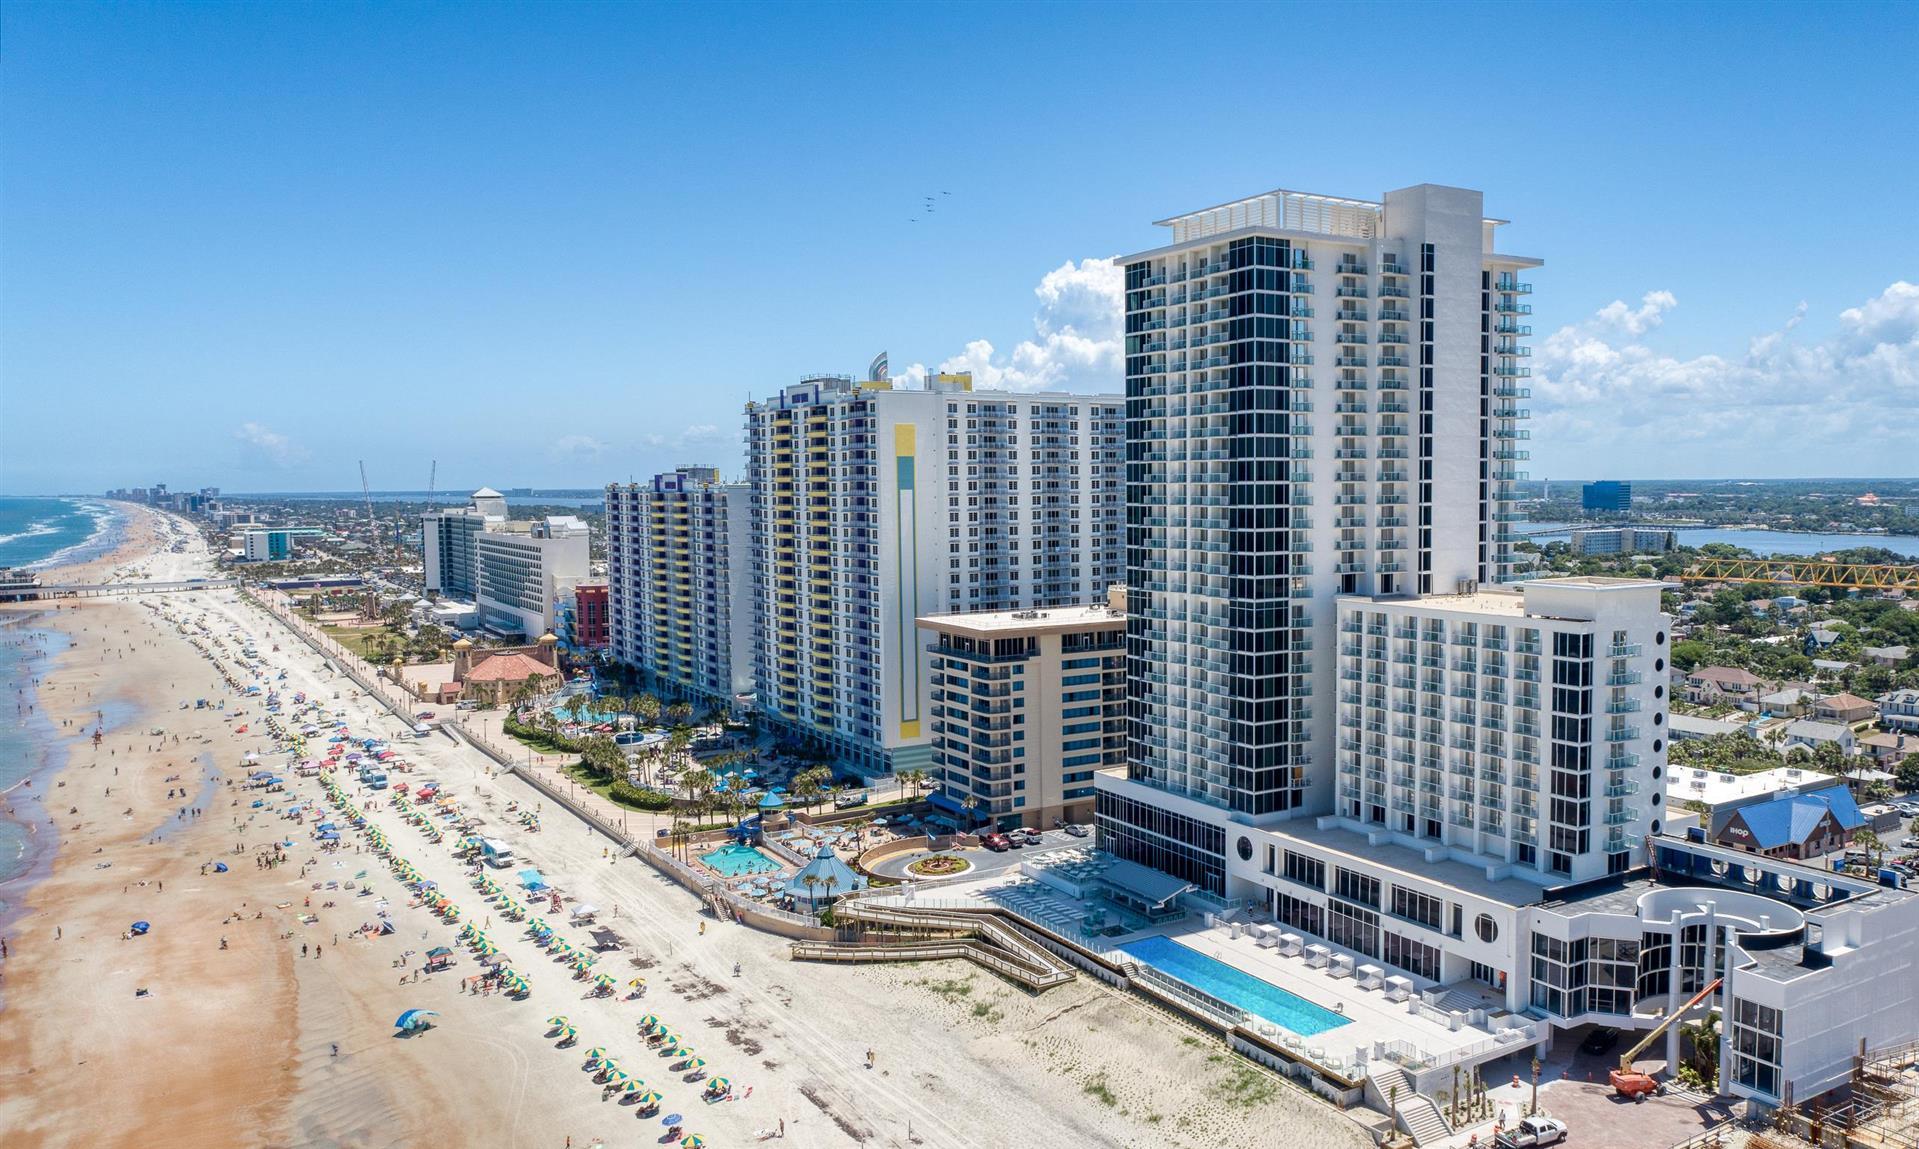 Daytona Grande Oceanfront Resort in Daytona Beach, FL